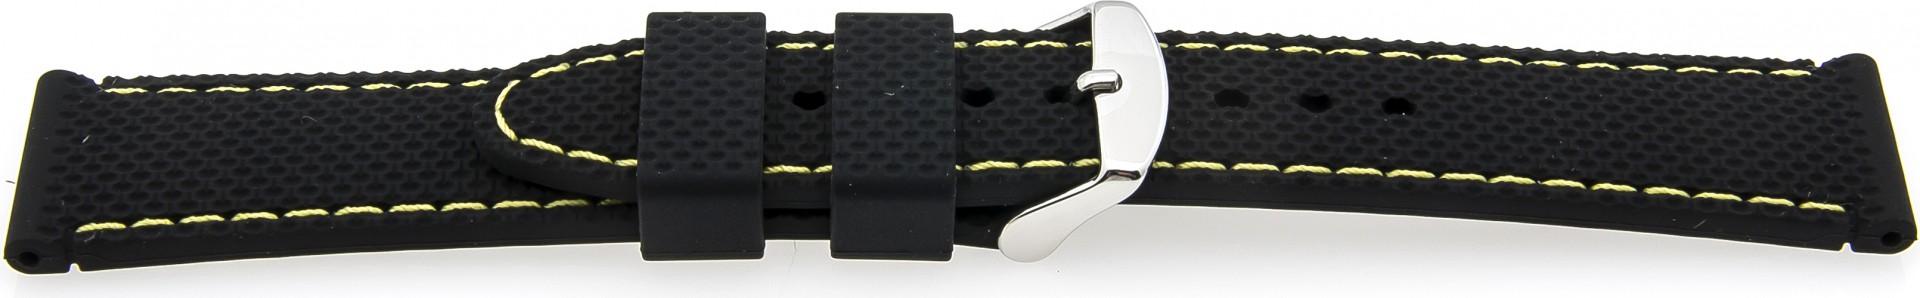   Watch Band Reifen-Muster Dornschließe - Silikon - schwarz with gelb stitching 